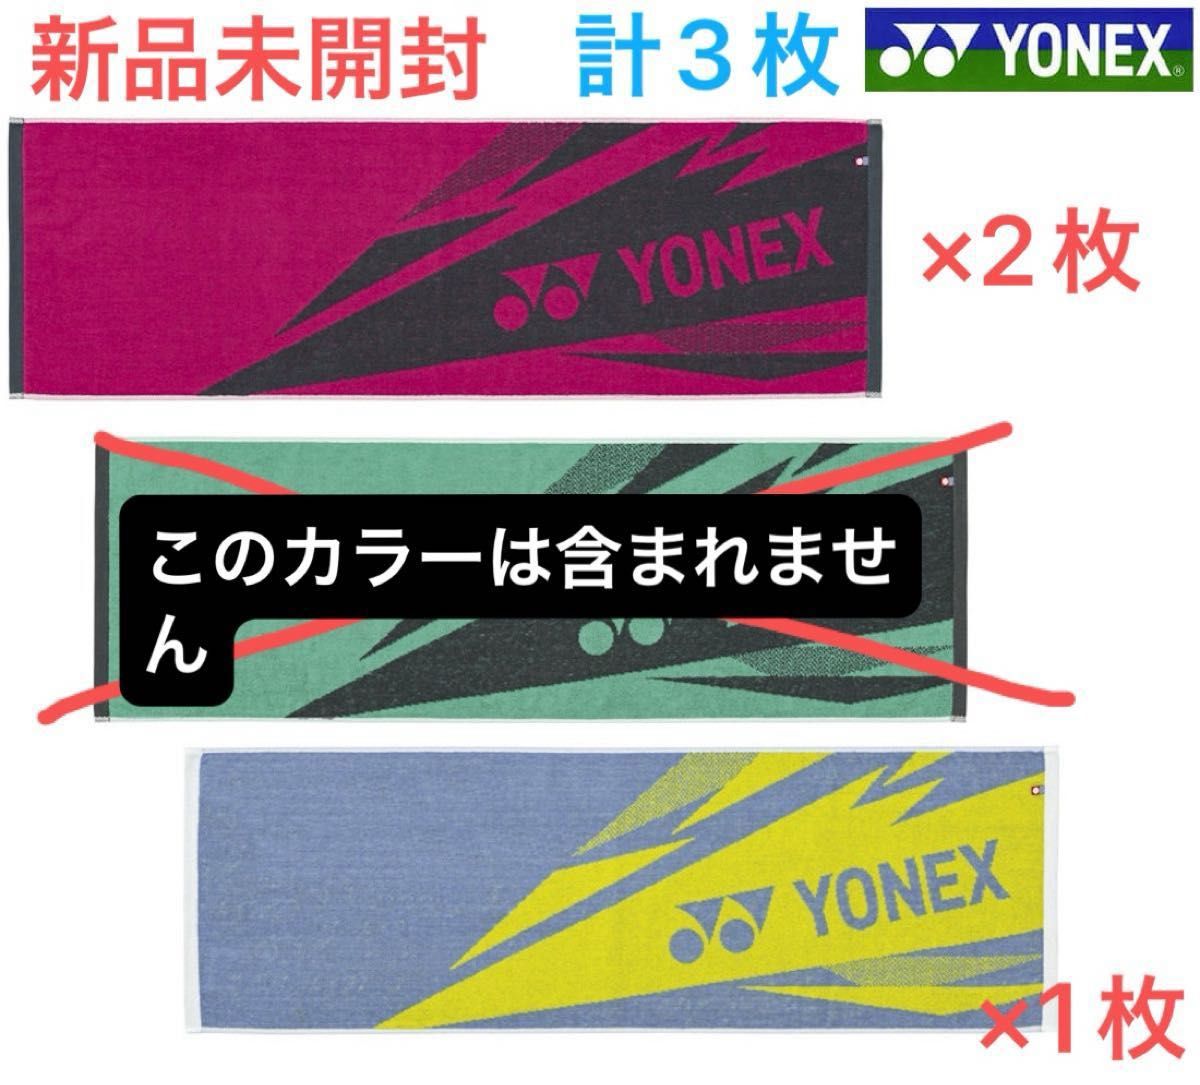 ヨネックス スポーツタオル 綿100% 3枚セット 新品未開封 箱あり YONEX AC1081 プライトピンク ミストブルー